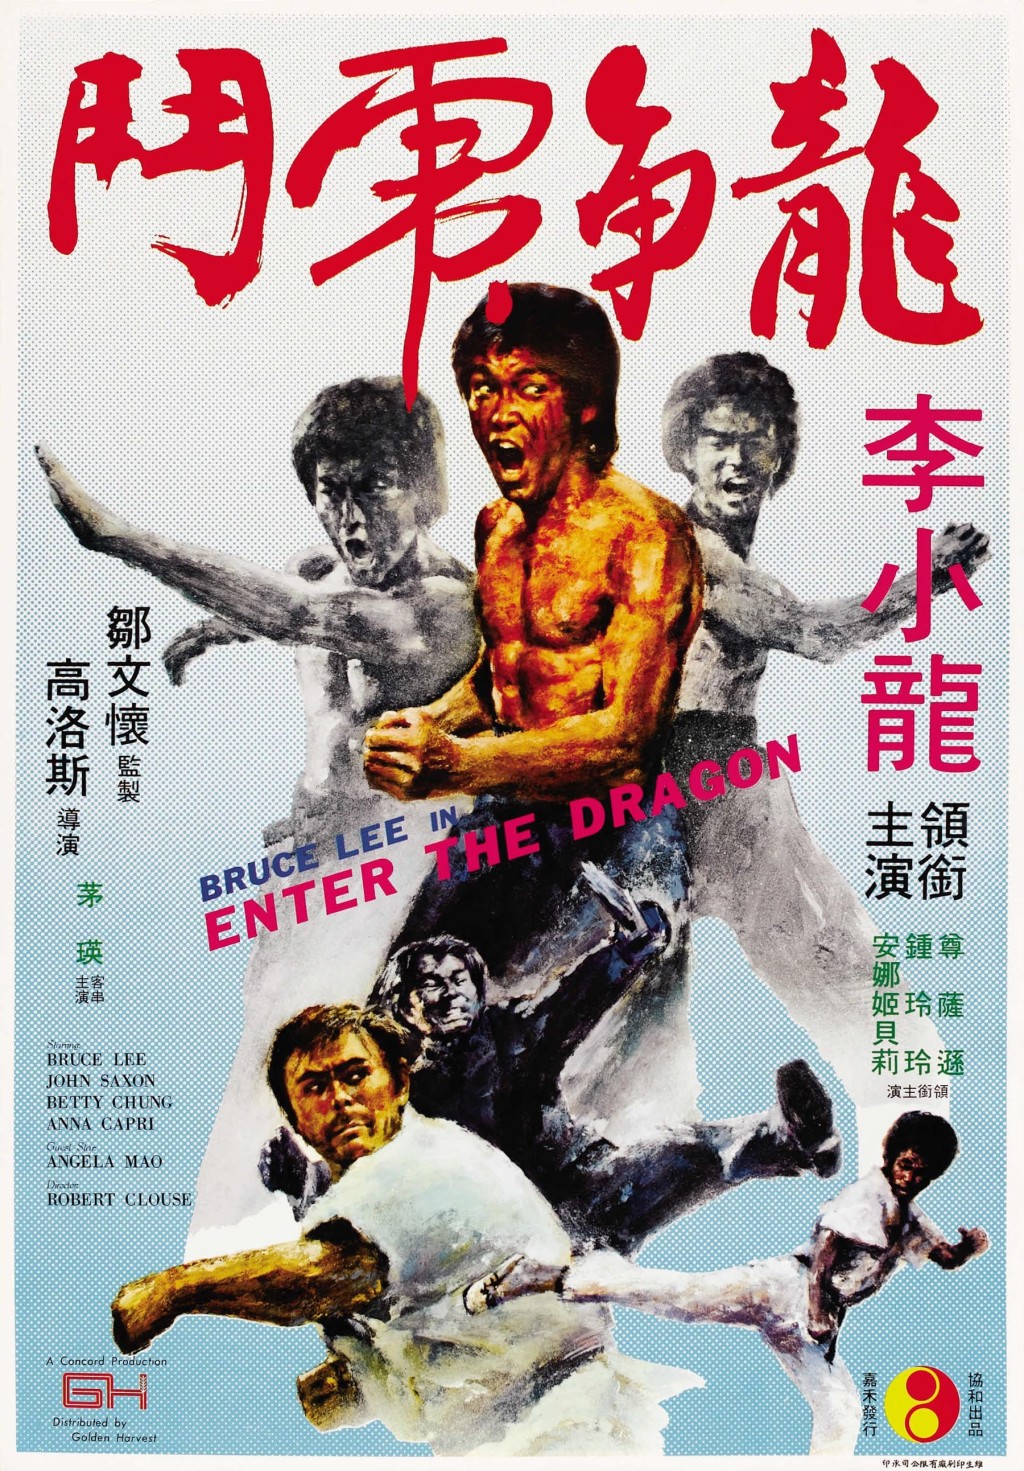 《龍爭虎鬥》（英語：Enter the Dragon）， 是李小龍領導主演的第四部武打電影